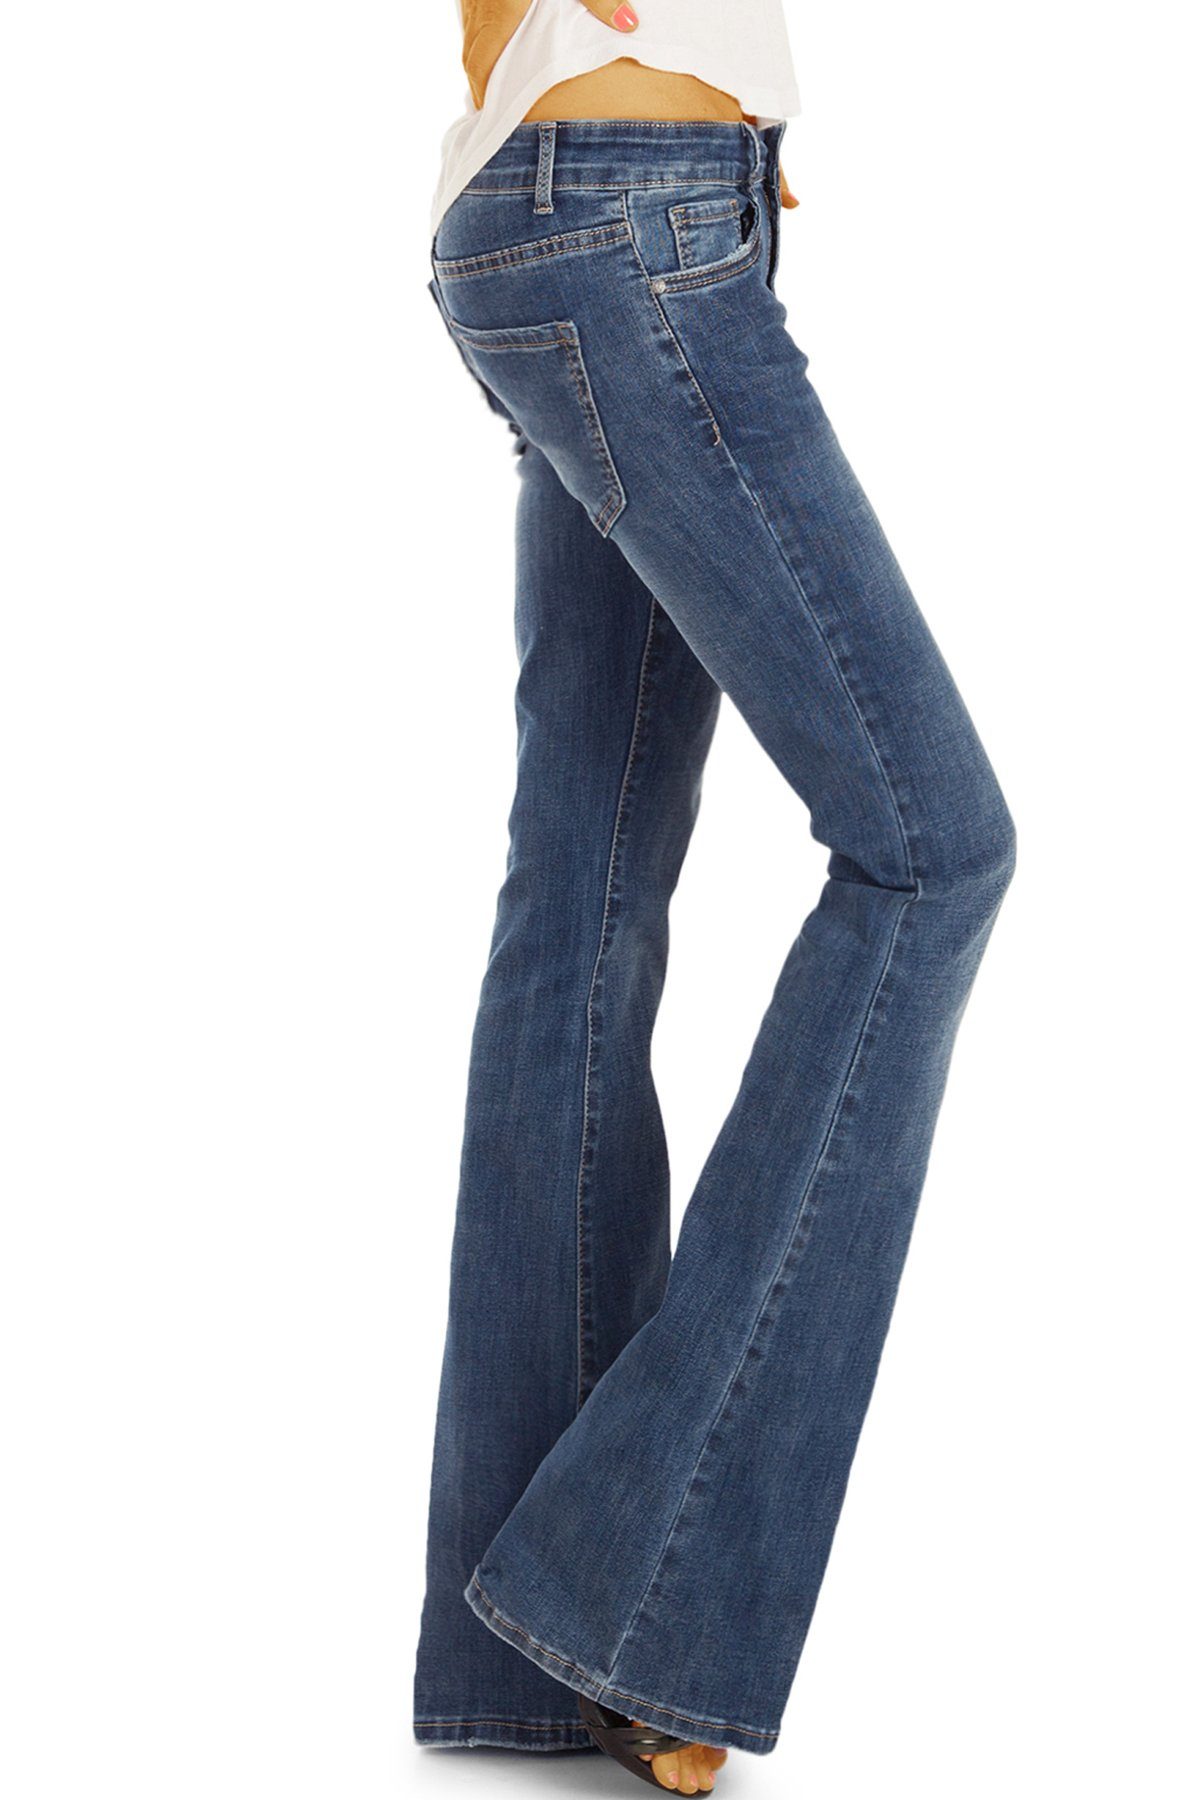 be styled Bootcut-Jeans medium waist j16p 5-pocket und Bein dunkelblau denimblau in Damenhose, ausgestelltes